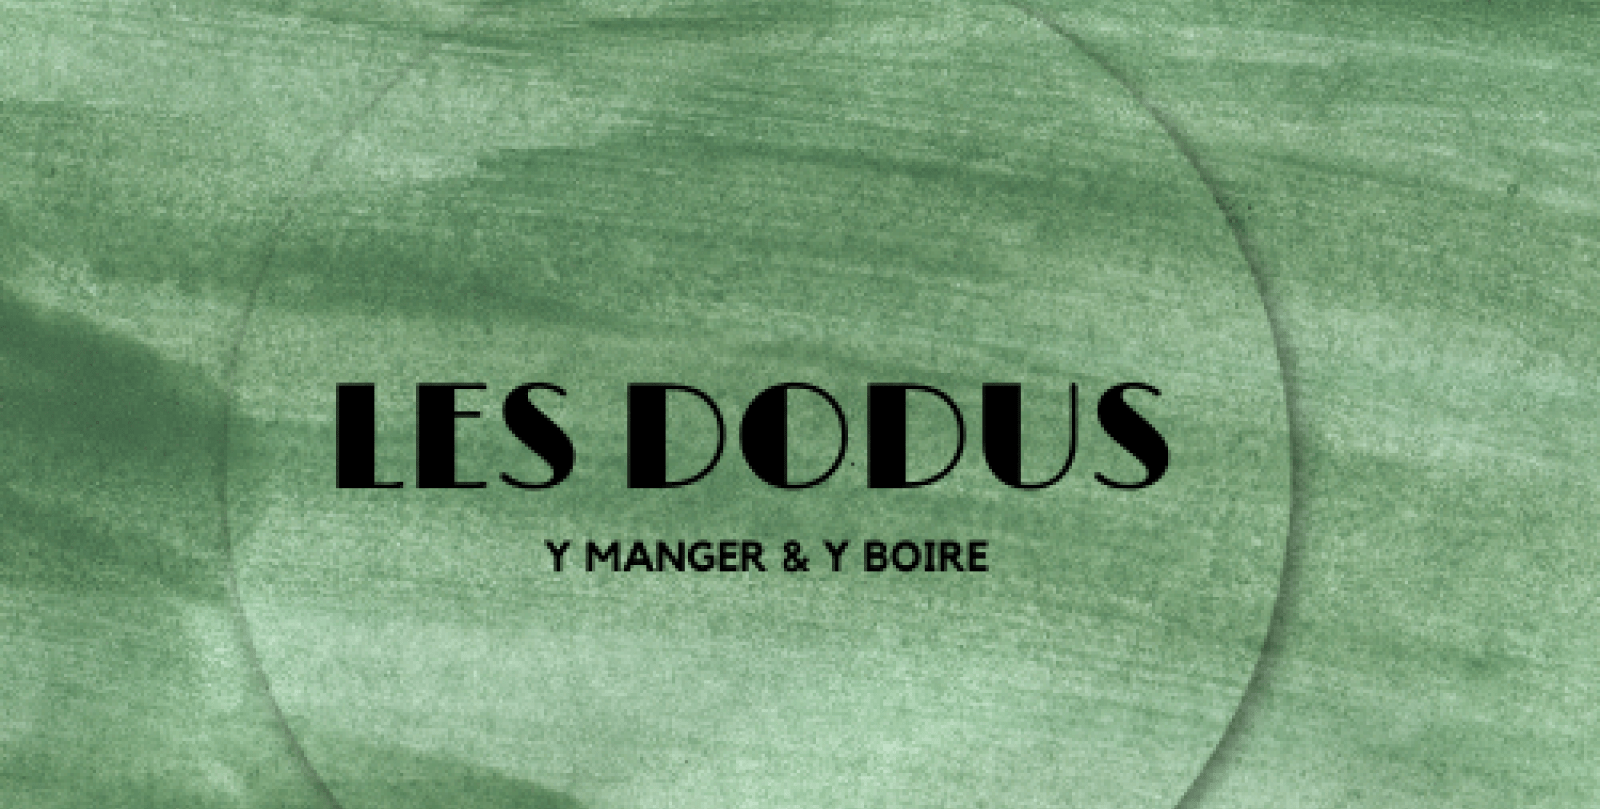 Les dodus Logo